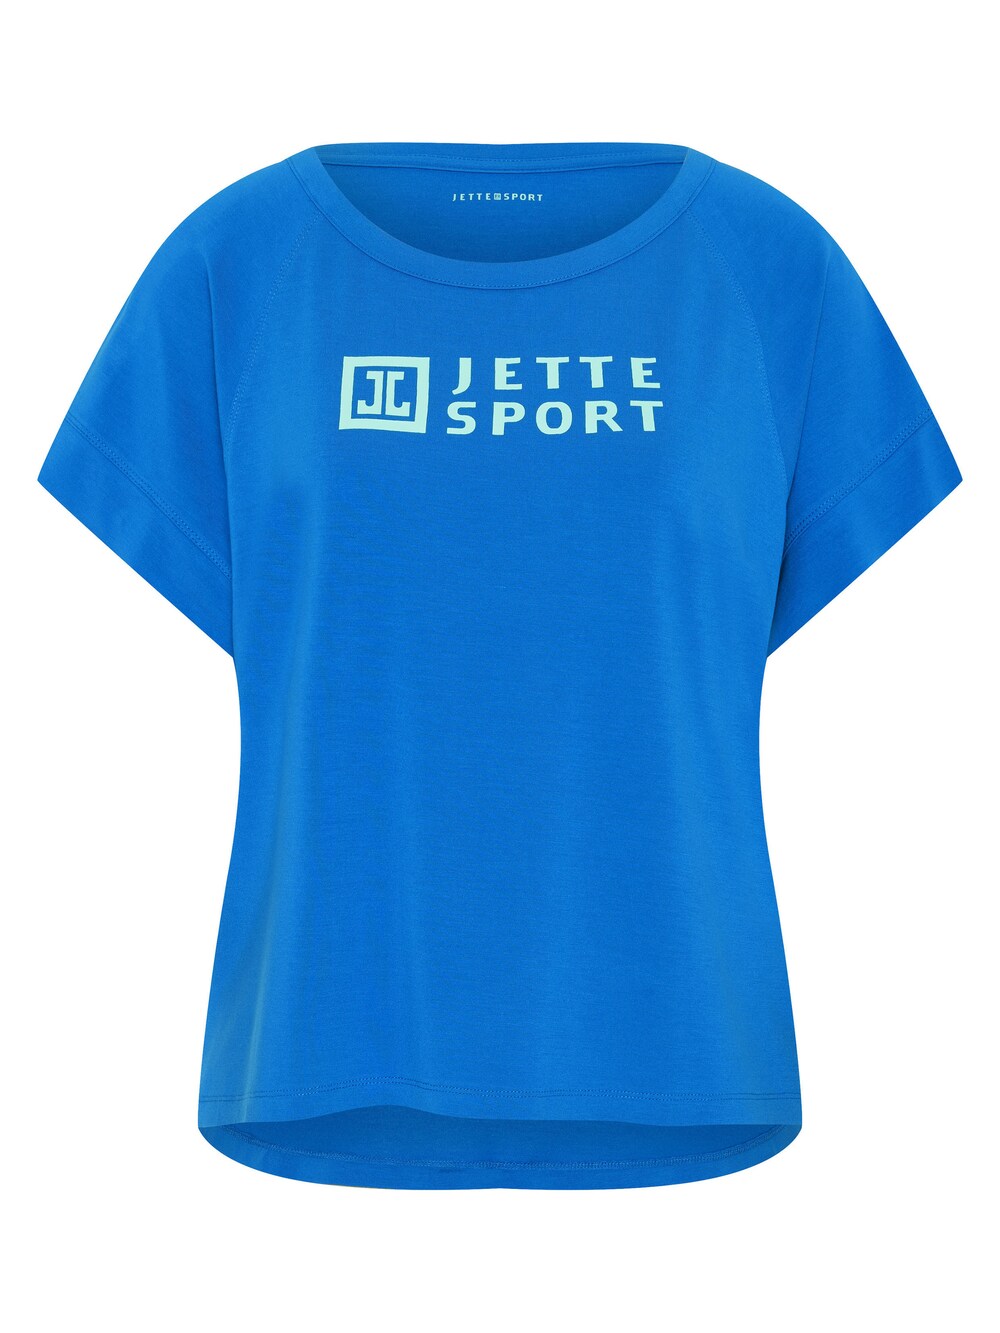 Рубашка Jette, голубое небо